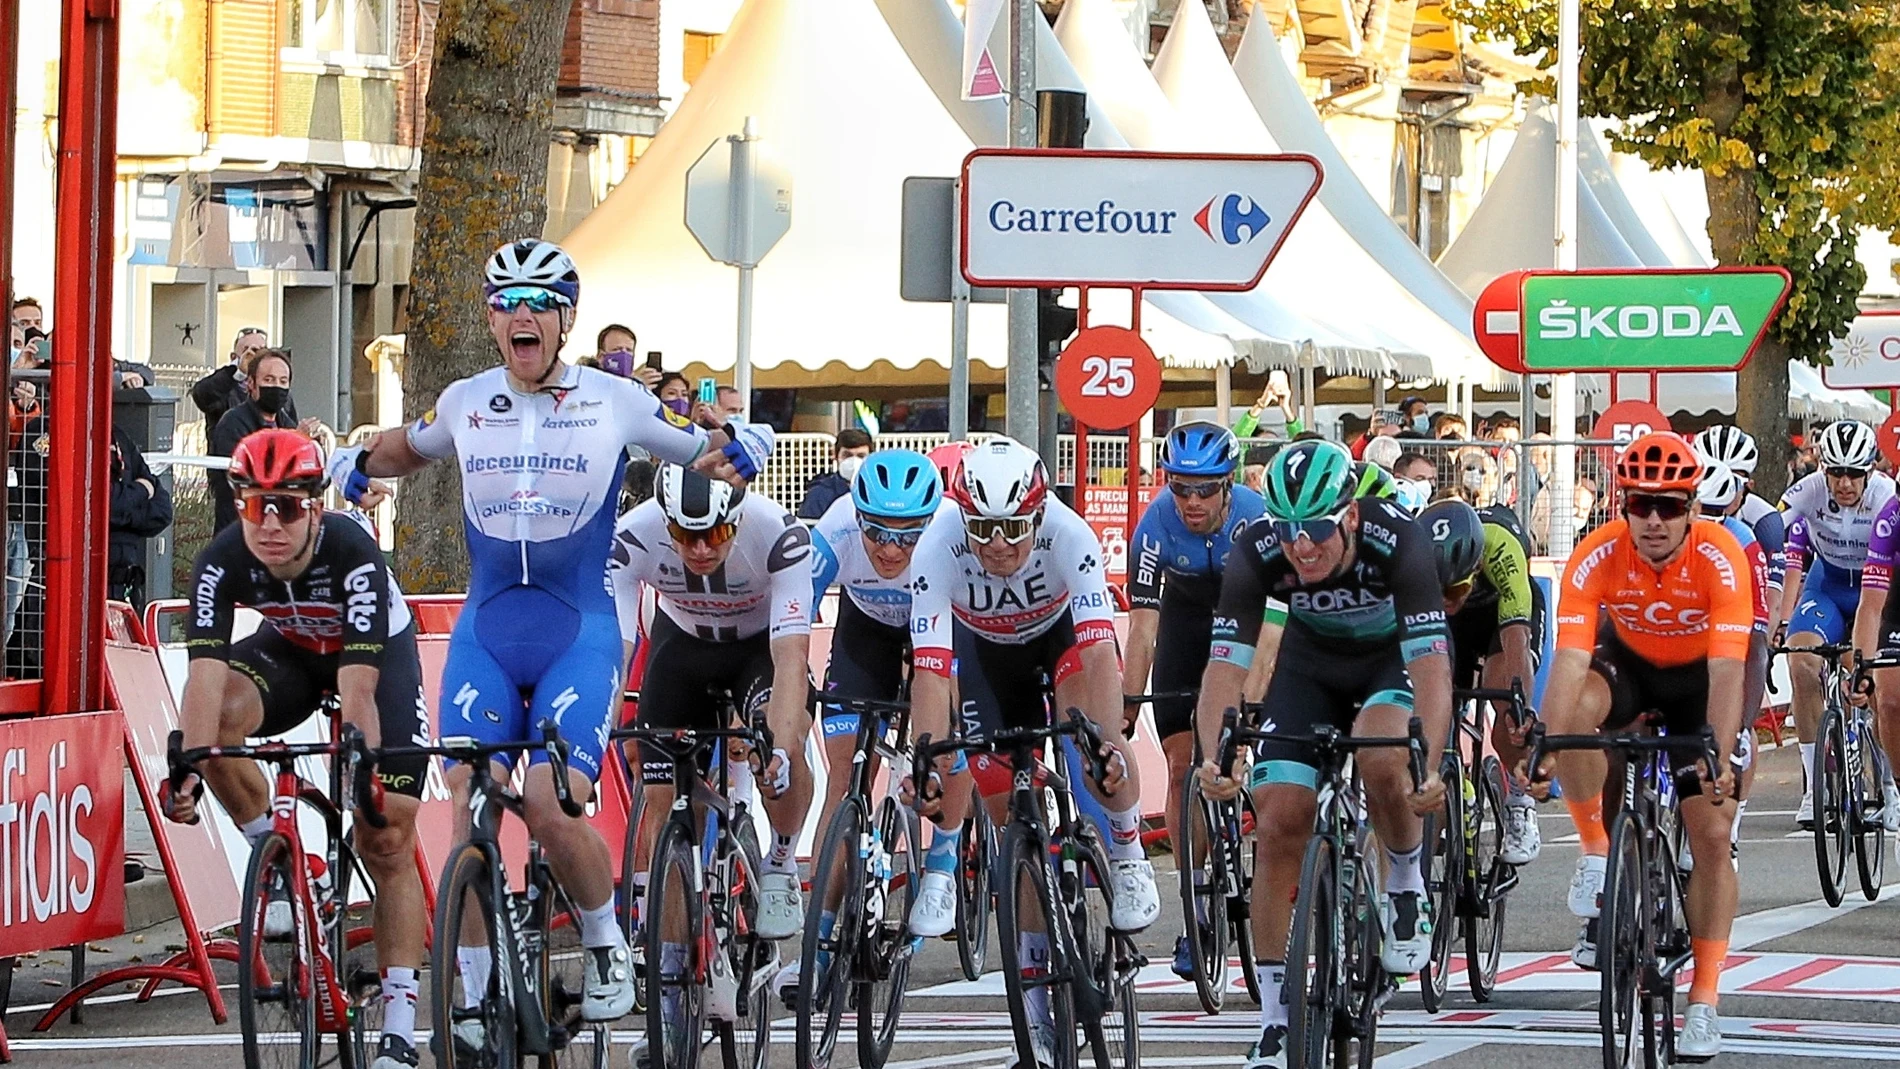 Llegada de la novena etapa de la 75 Vuelta Ciclista a España, que se disputa entre Castrillo del Val (Burgos) y Aguilar de Campoo (Palencia)